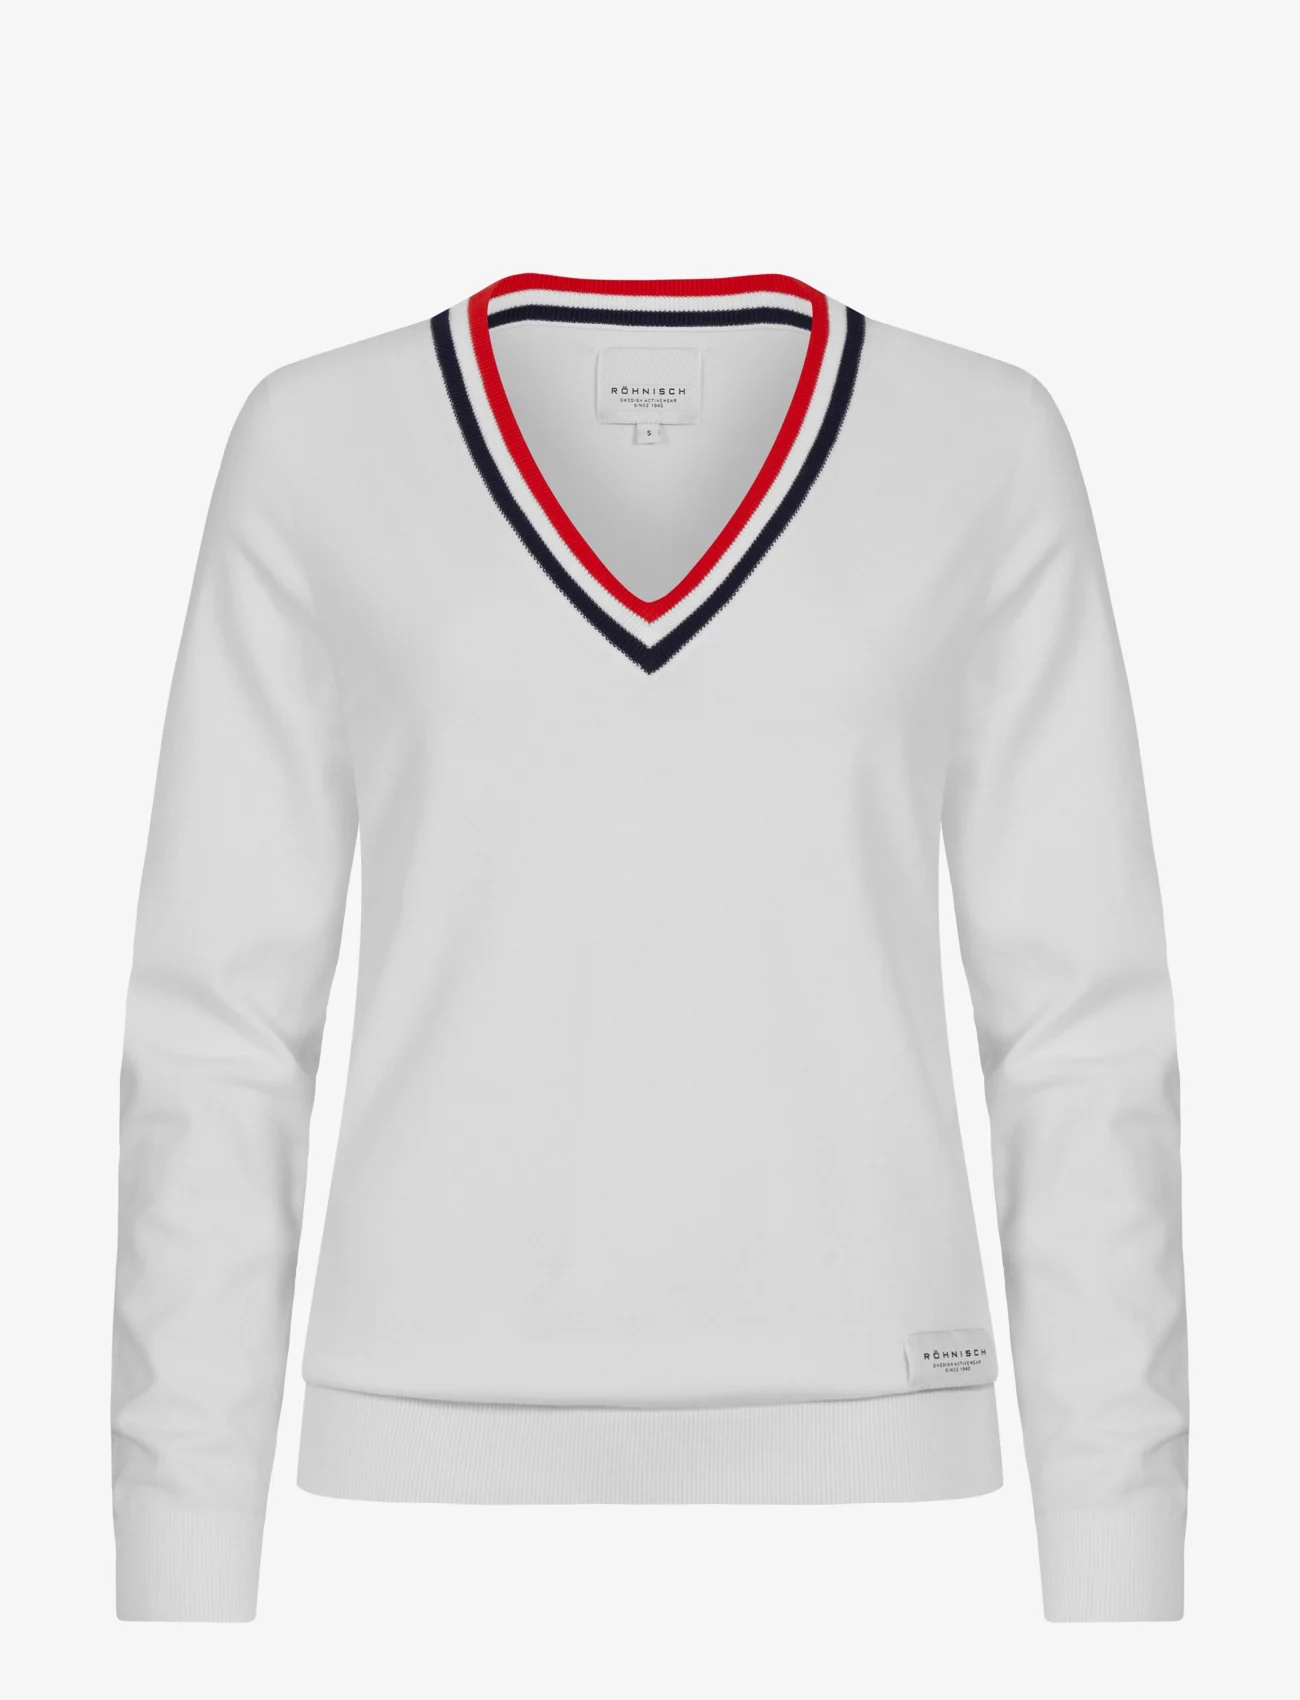 Röhnisch - Adele Knitted Sweater - sweatshirts - white - 1